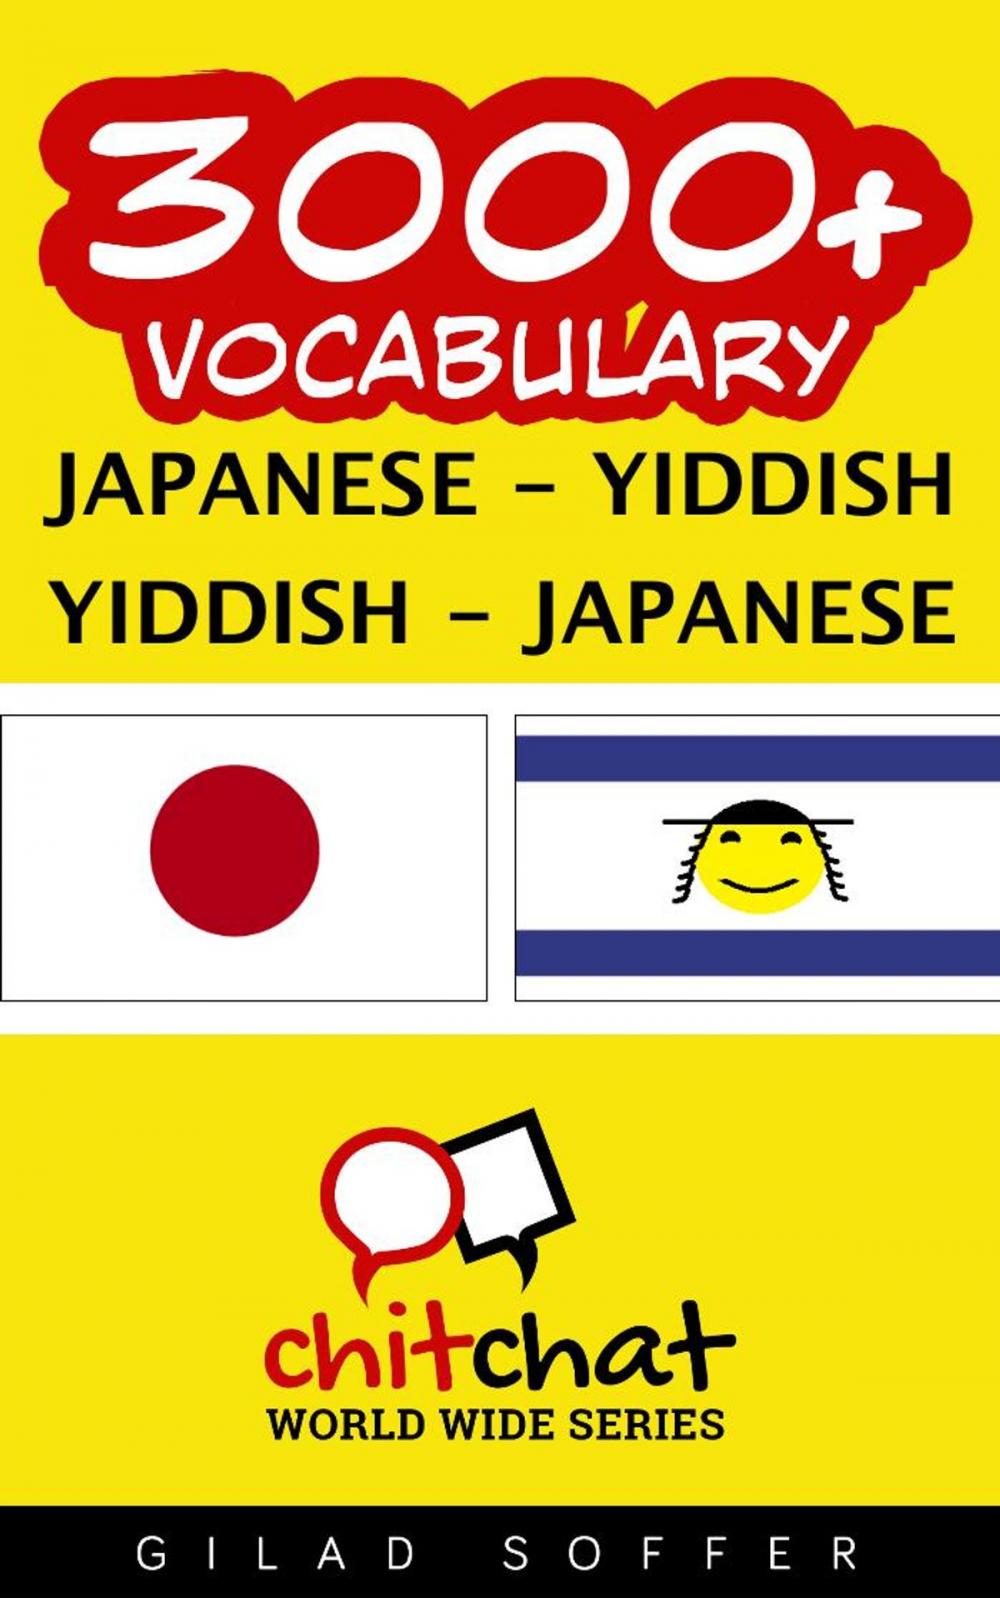 Big bigCover of 3000+ Vocabulary Japanese - Yiddish